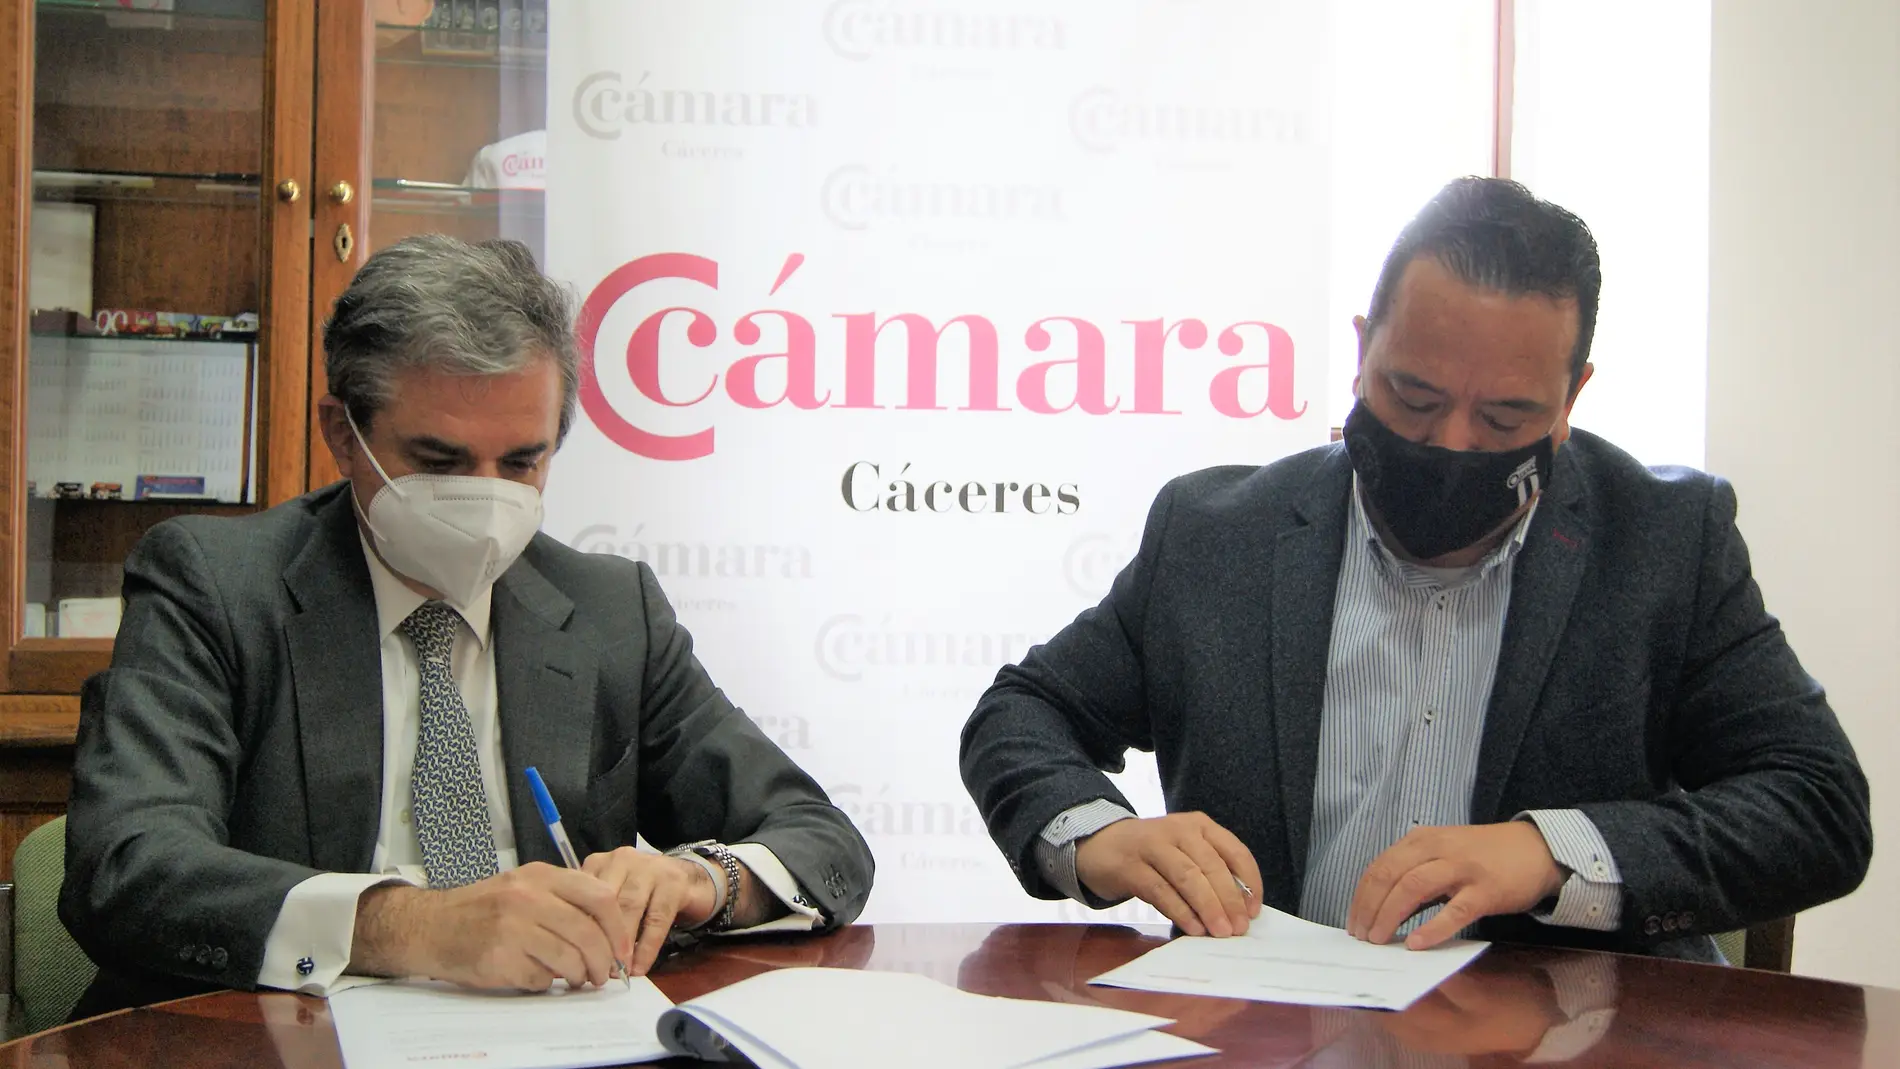 Cámara de Comercio de Cáceres y Club Universo Extremeño firman un convenio para fortalecer los vínculos con emigrantes de la provincia cacereña